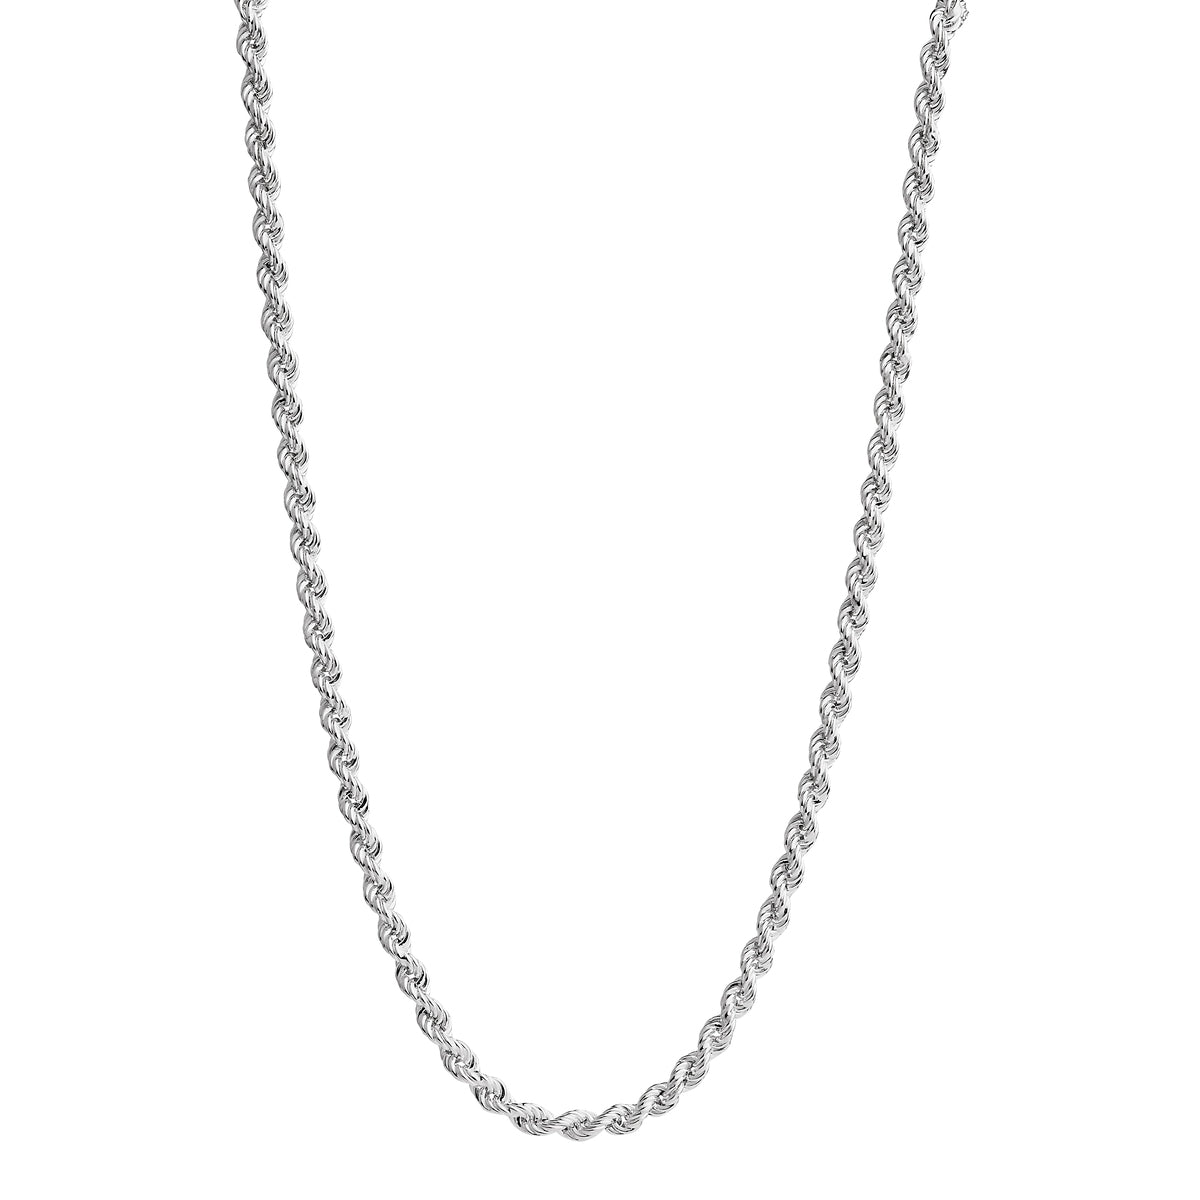 NAJO Twine Silver Chain Necklace (80cm)